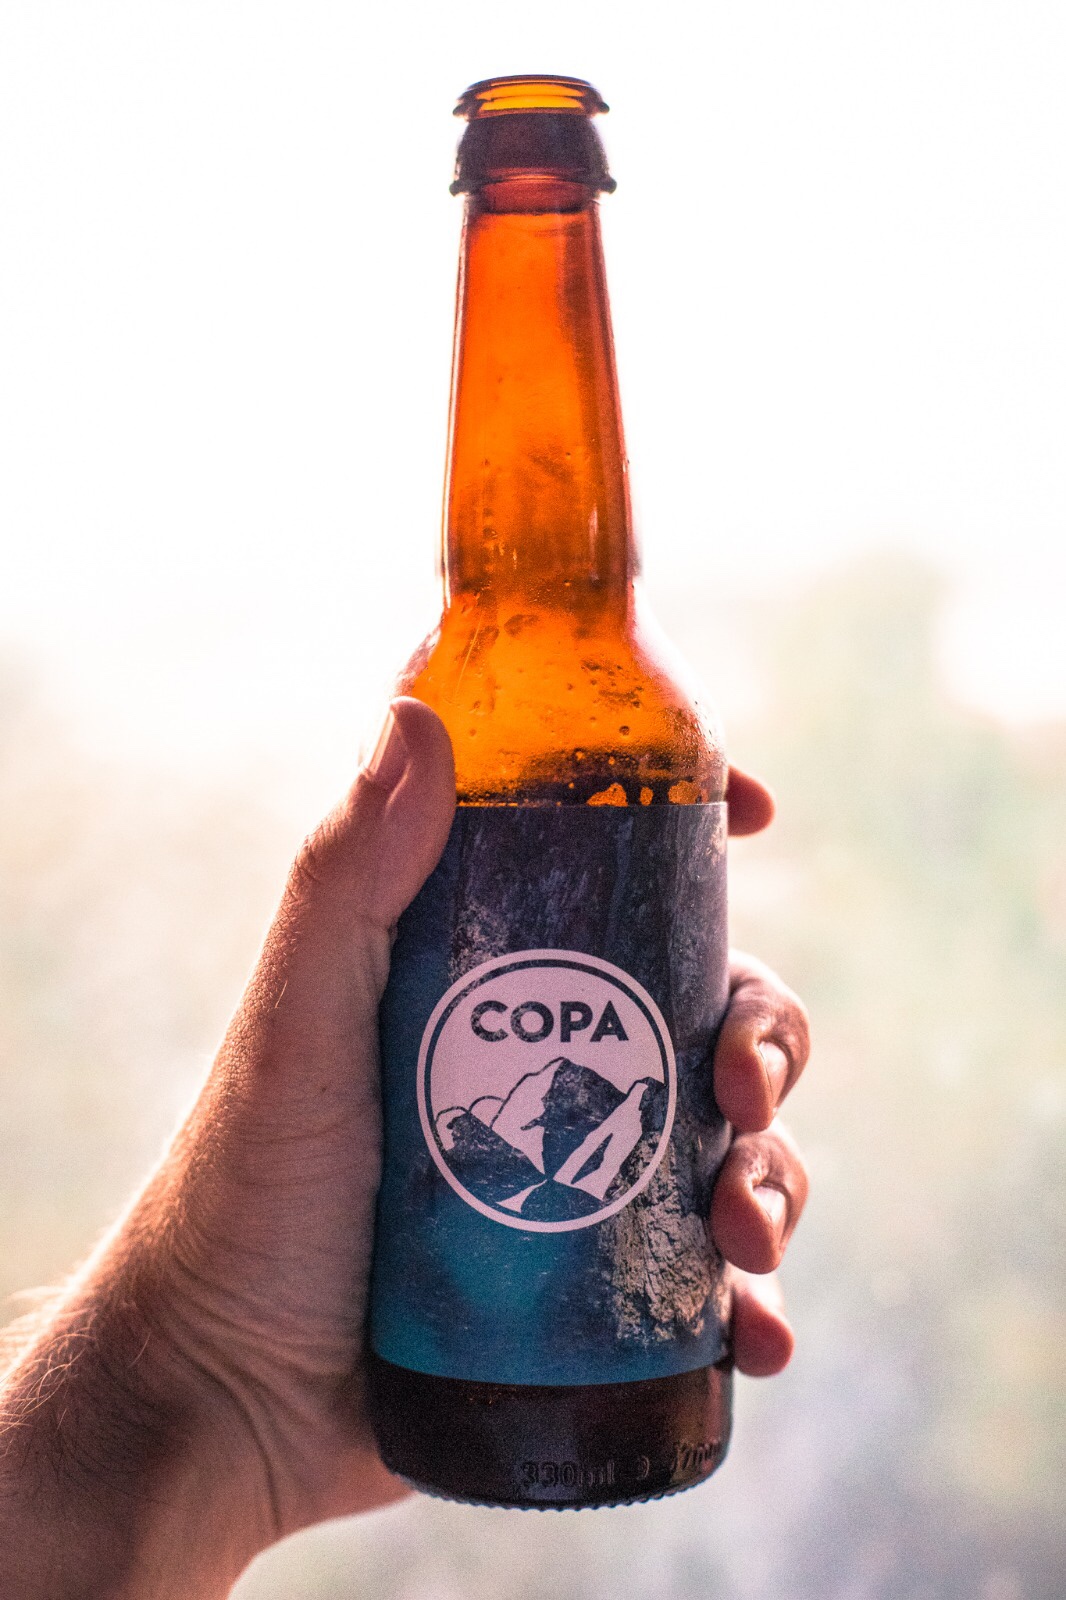 copa bottle of beer